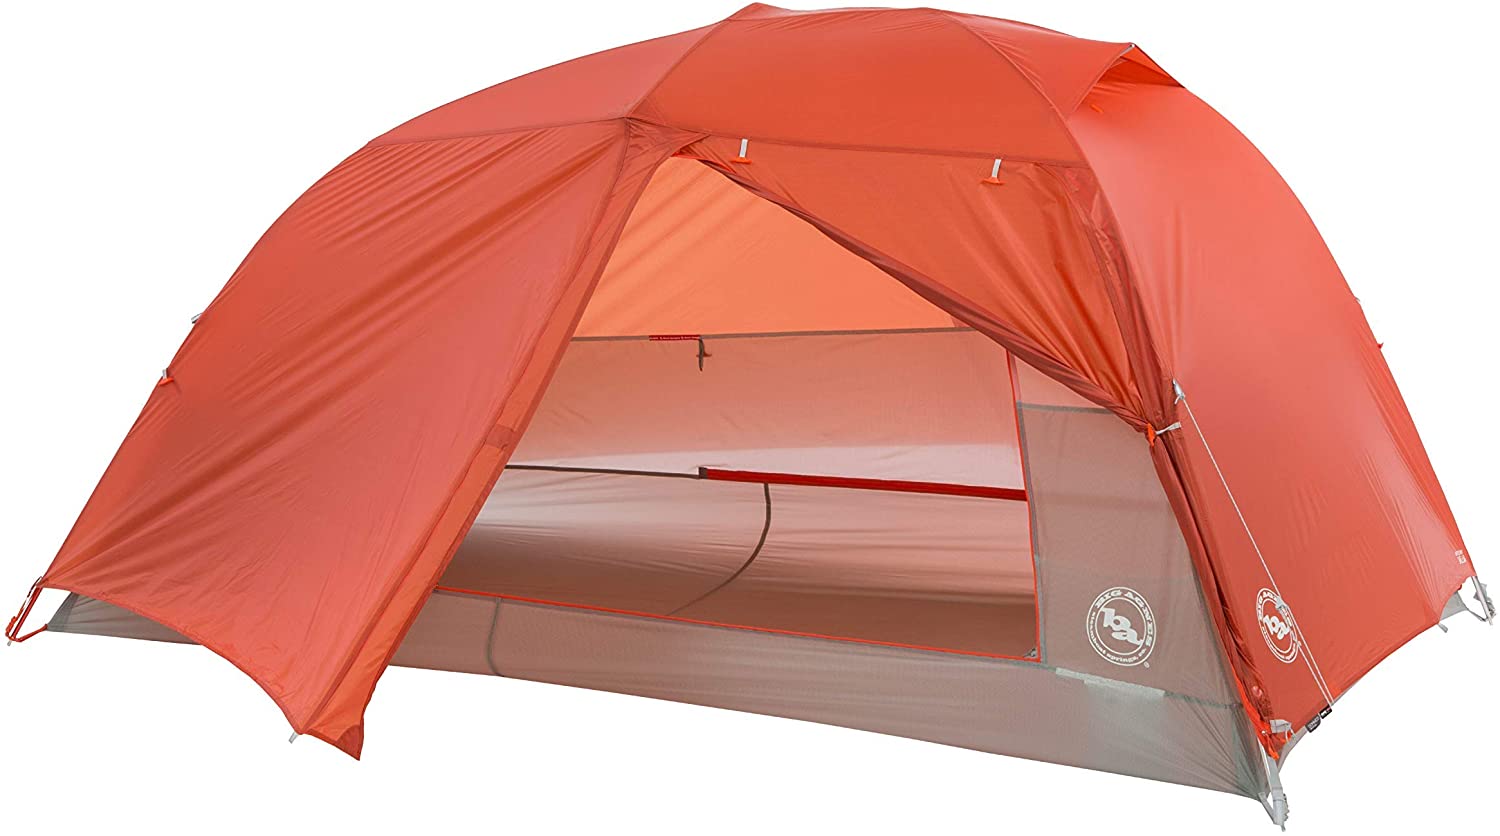 High Peak saco de dormir Pak poliéster 600 210 x 50/75 cm verde/rojo camping tiendas de campaña